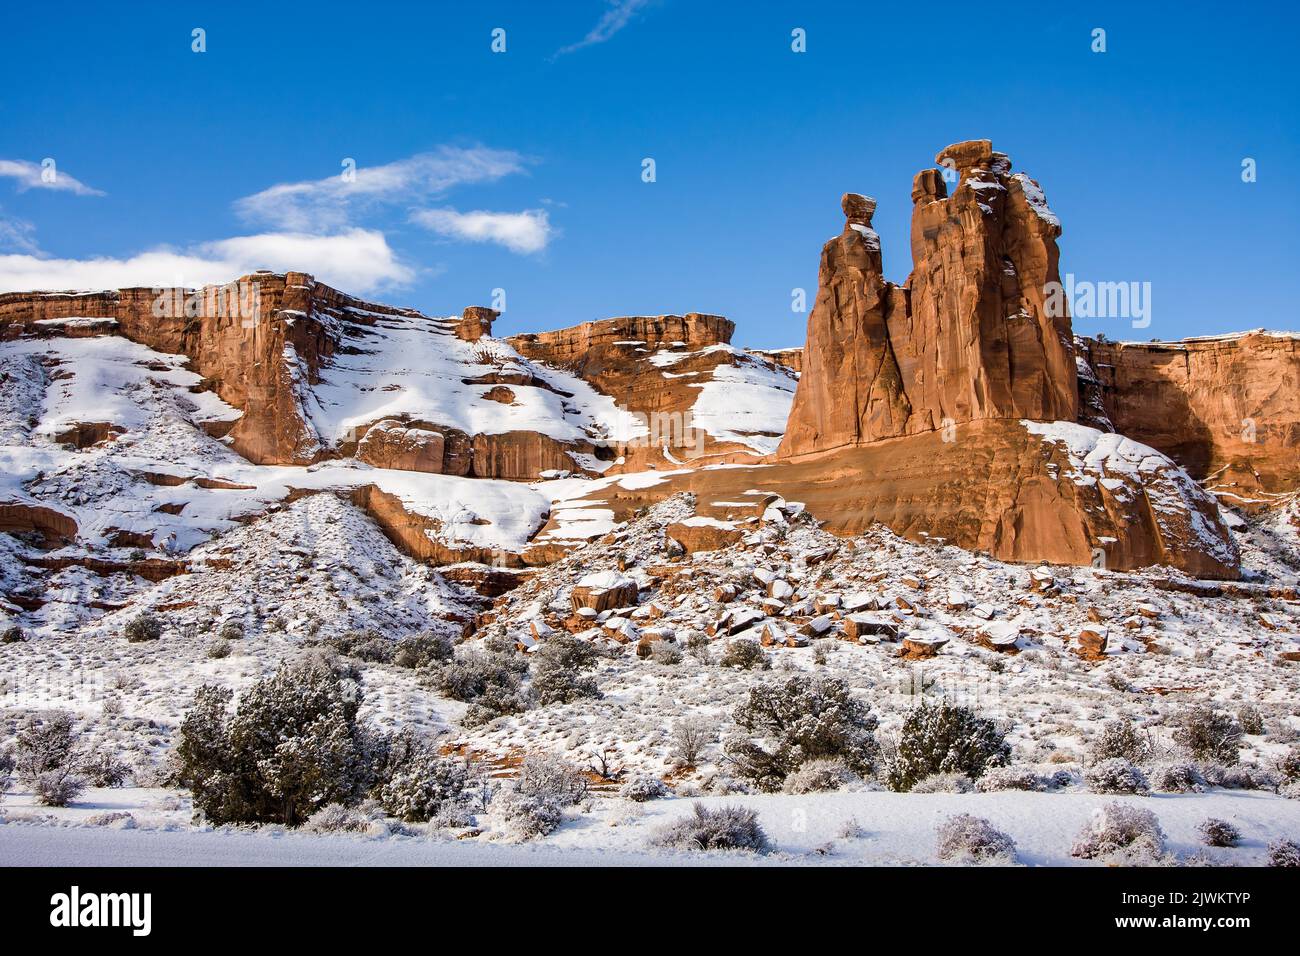 Les hoodoos connus sous le nom de trois gossips dans les tours de palais de justice avec de la neige en hiver. Parc national Arches, Moab, Utah. Banque D'Images